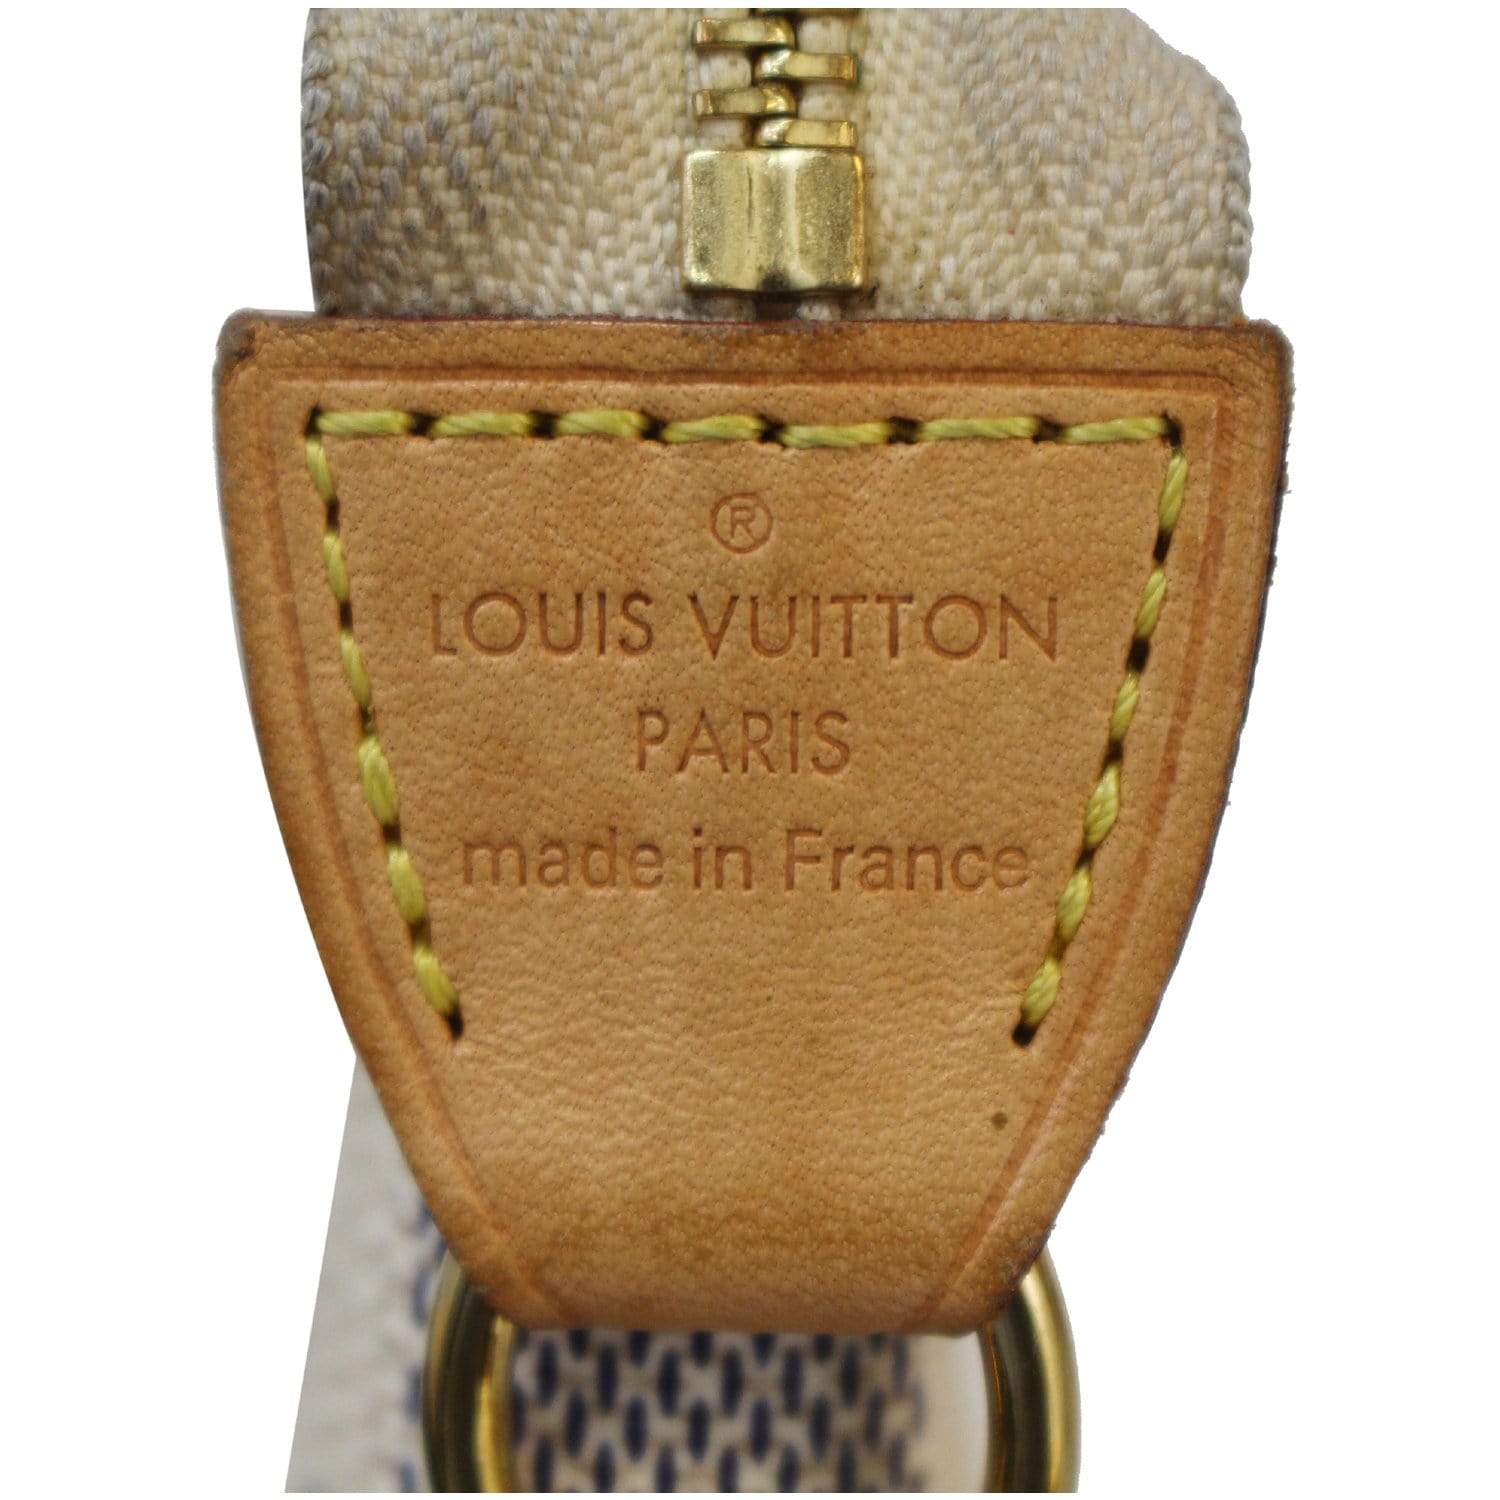 Authentic Louis Vuitton Mini Pochette for Sale in Monterey, CA - OfferUp